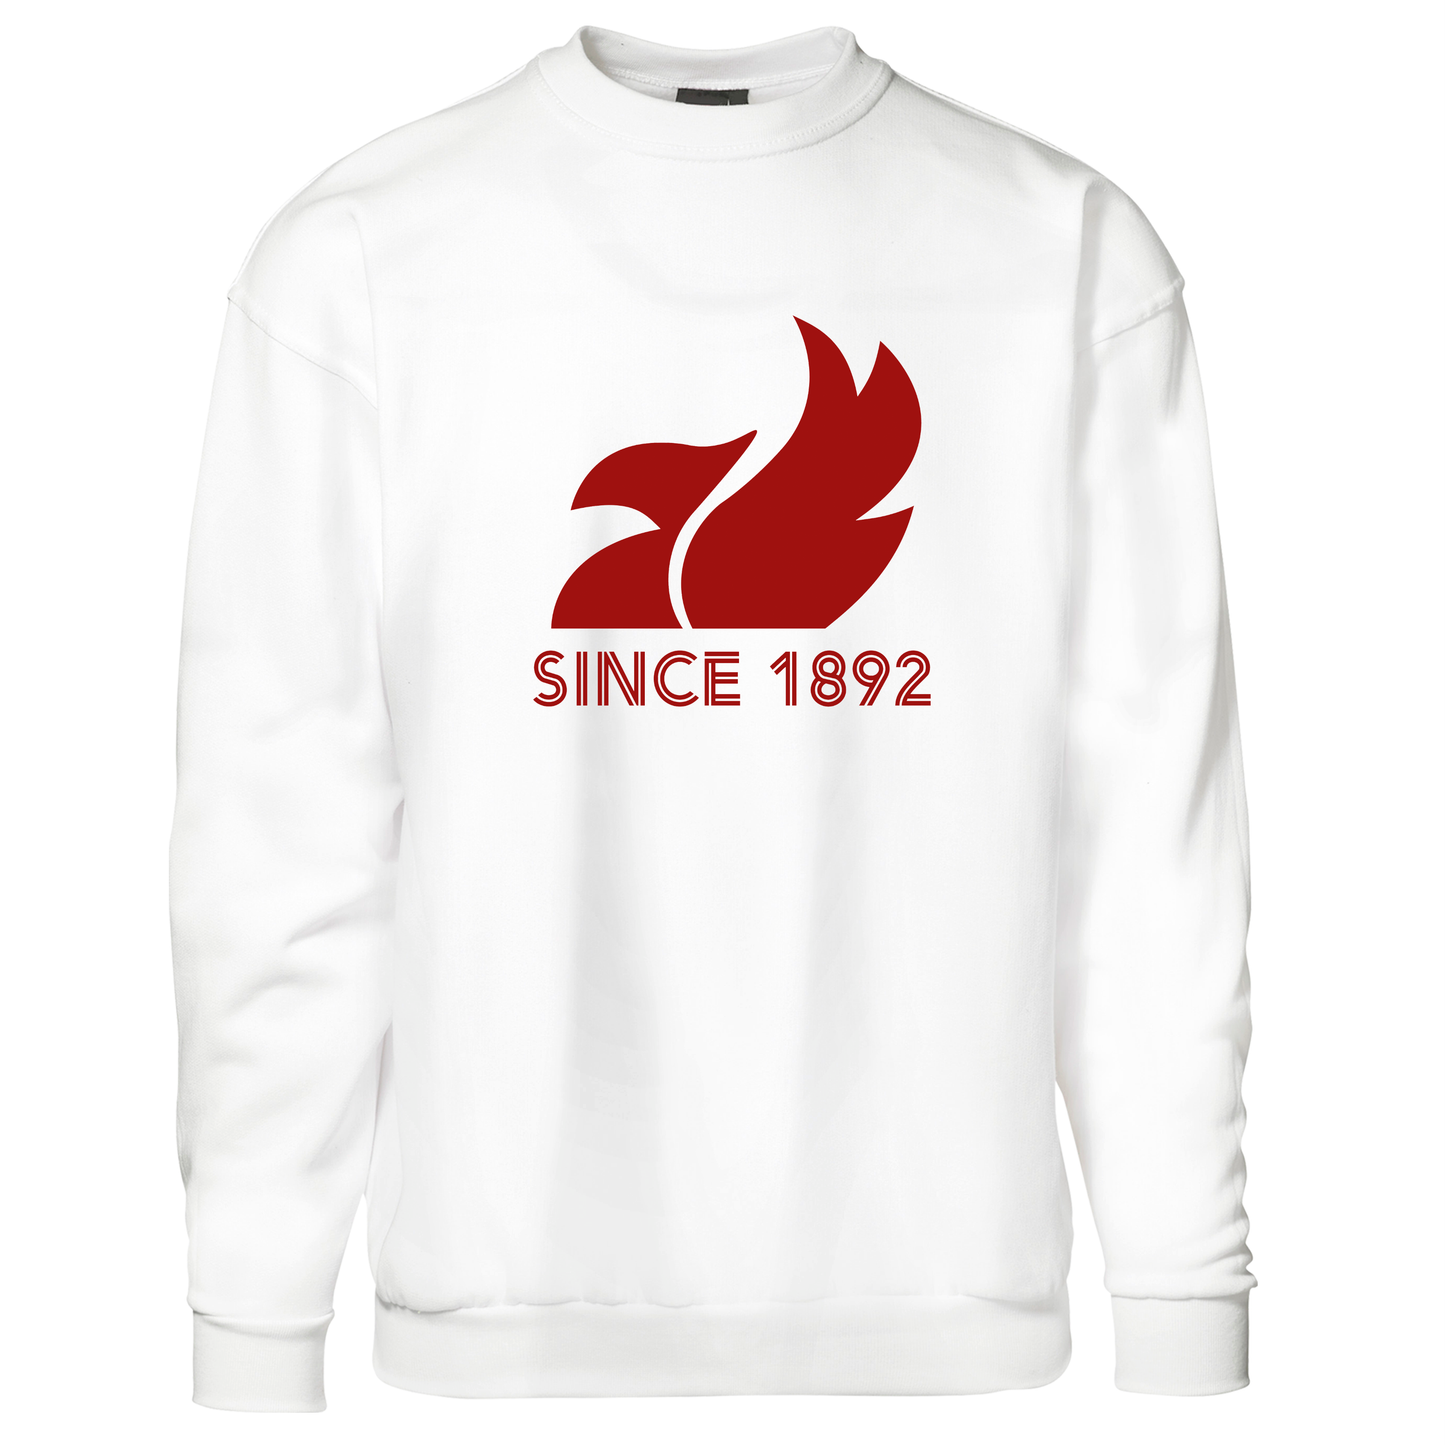 Since 1892 - Sweatshirt